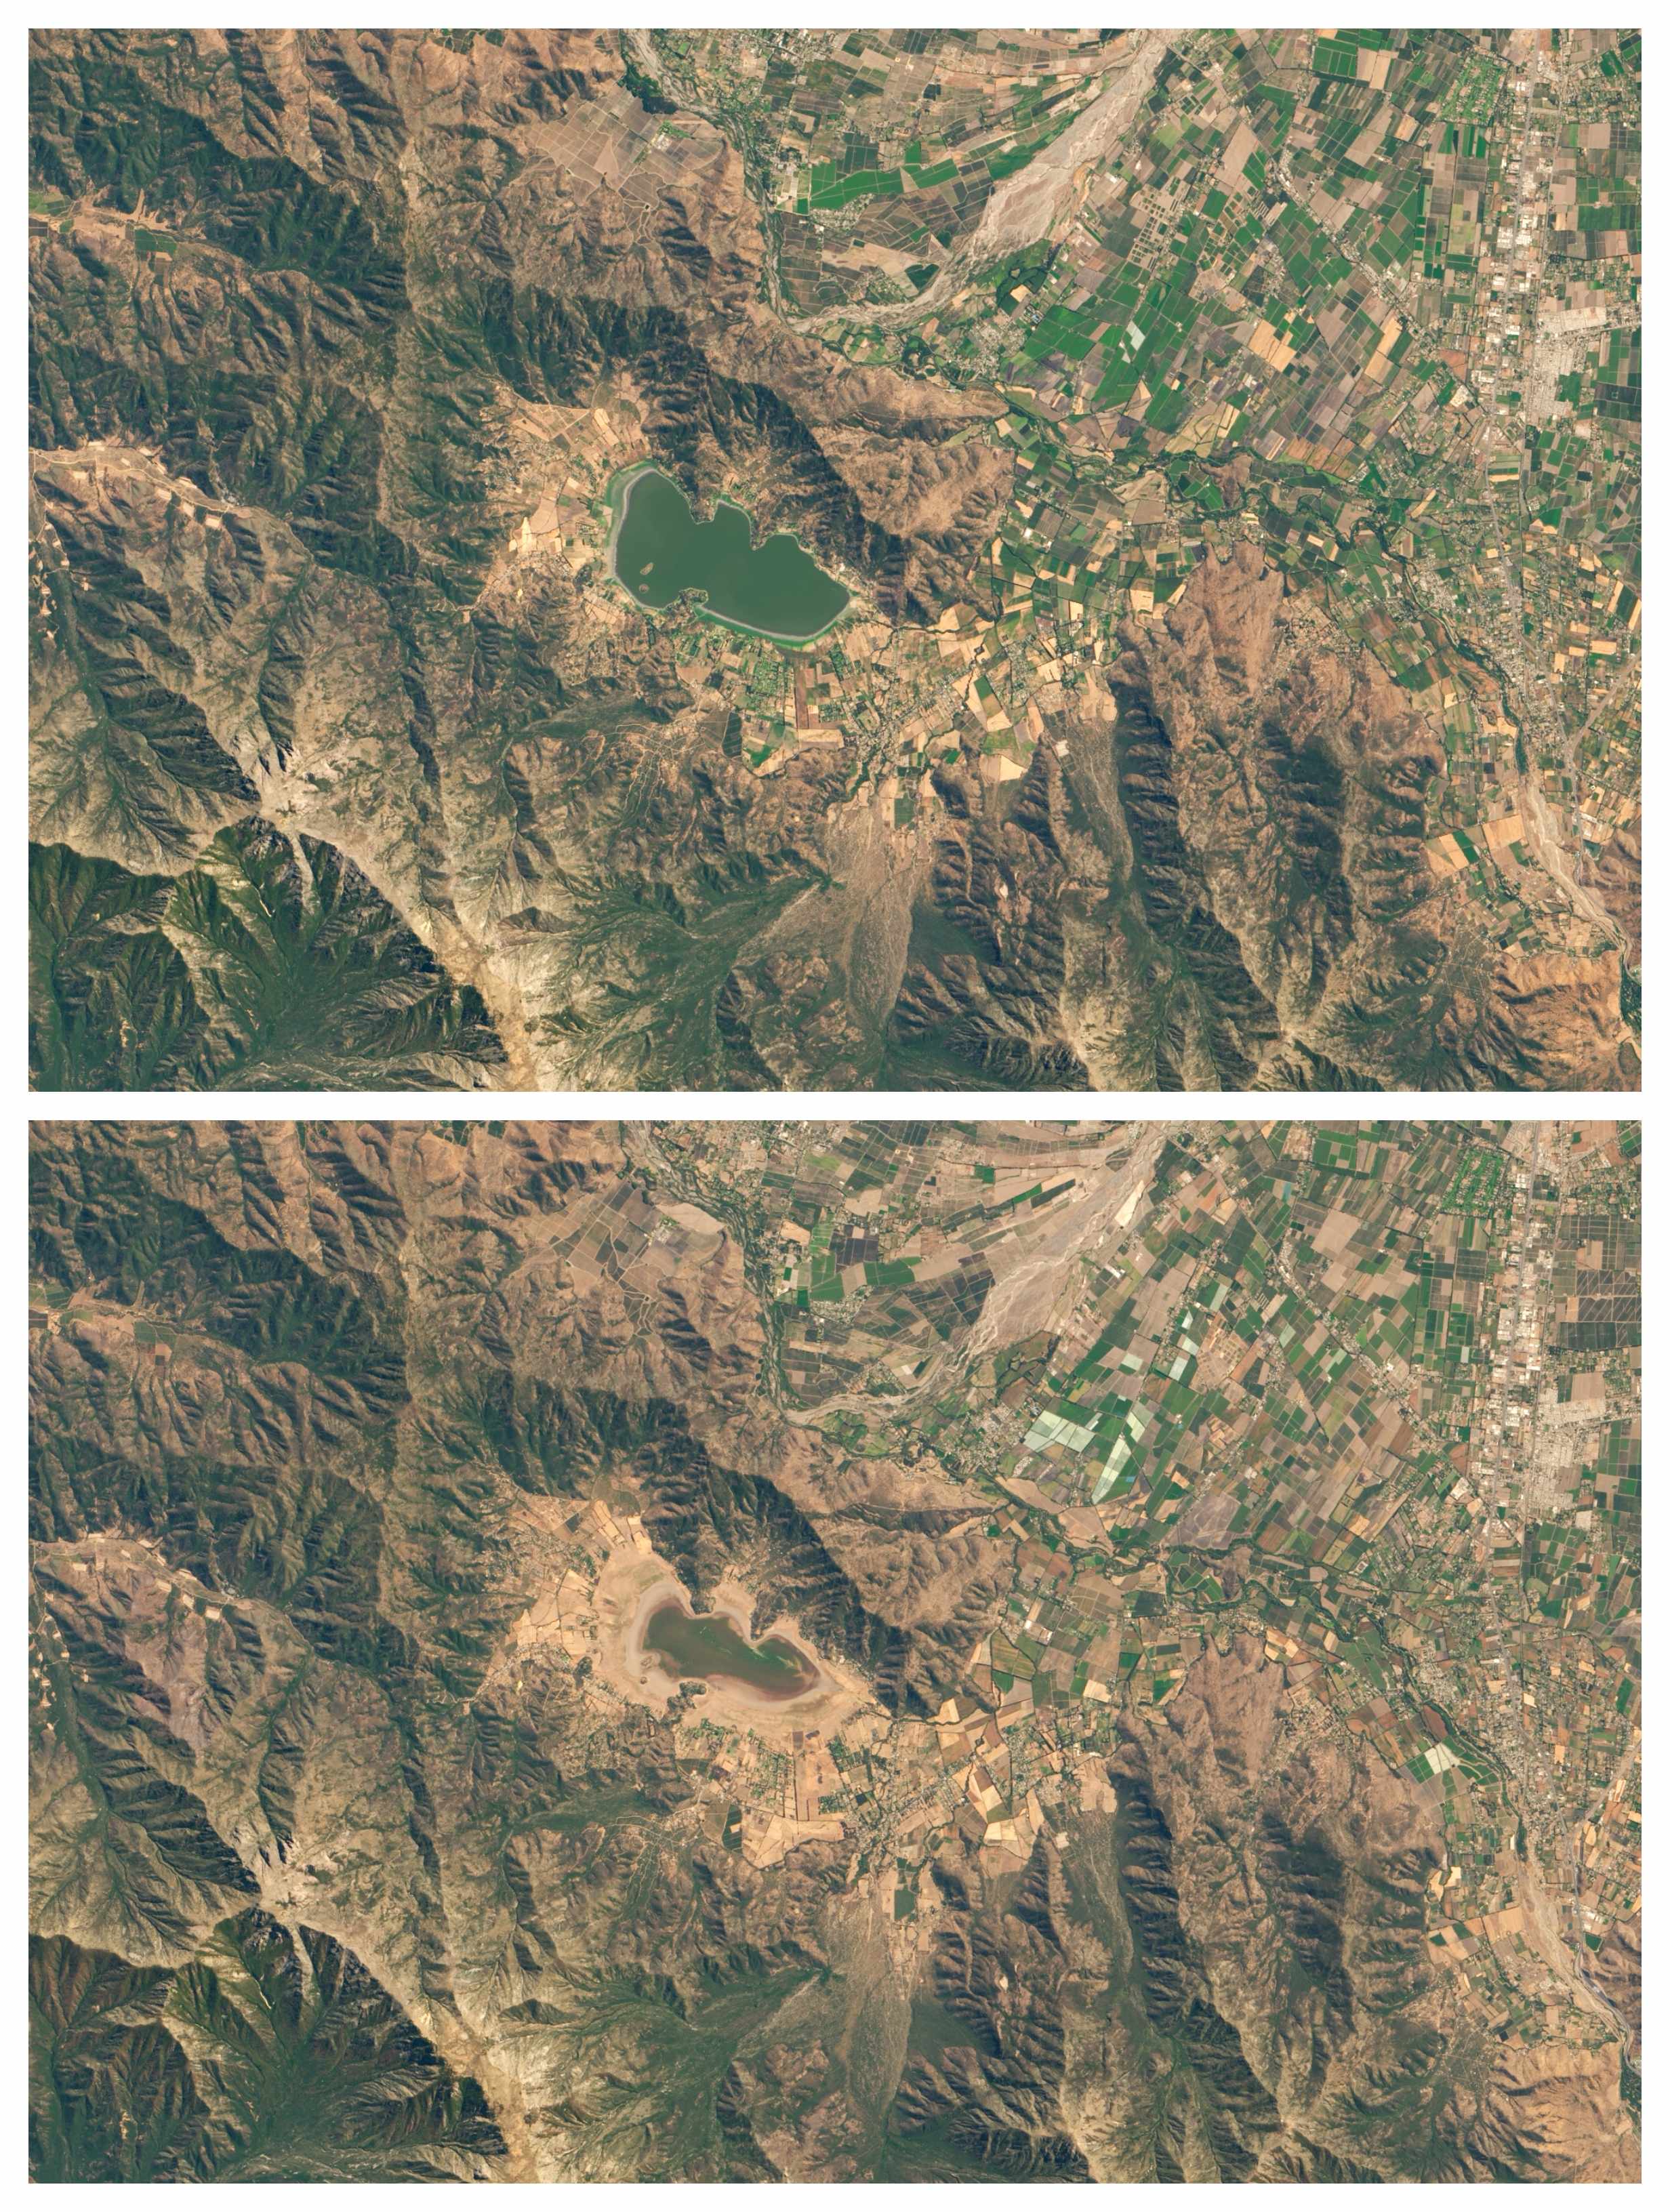 La imagen superior muestra el estado de la Laguna Aculeo en febrero de 2014. La imagen en inferior, la poca cantidad de agua que registraba en marzo de 2019 (Observatorio de la Tierra)